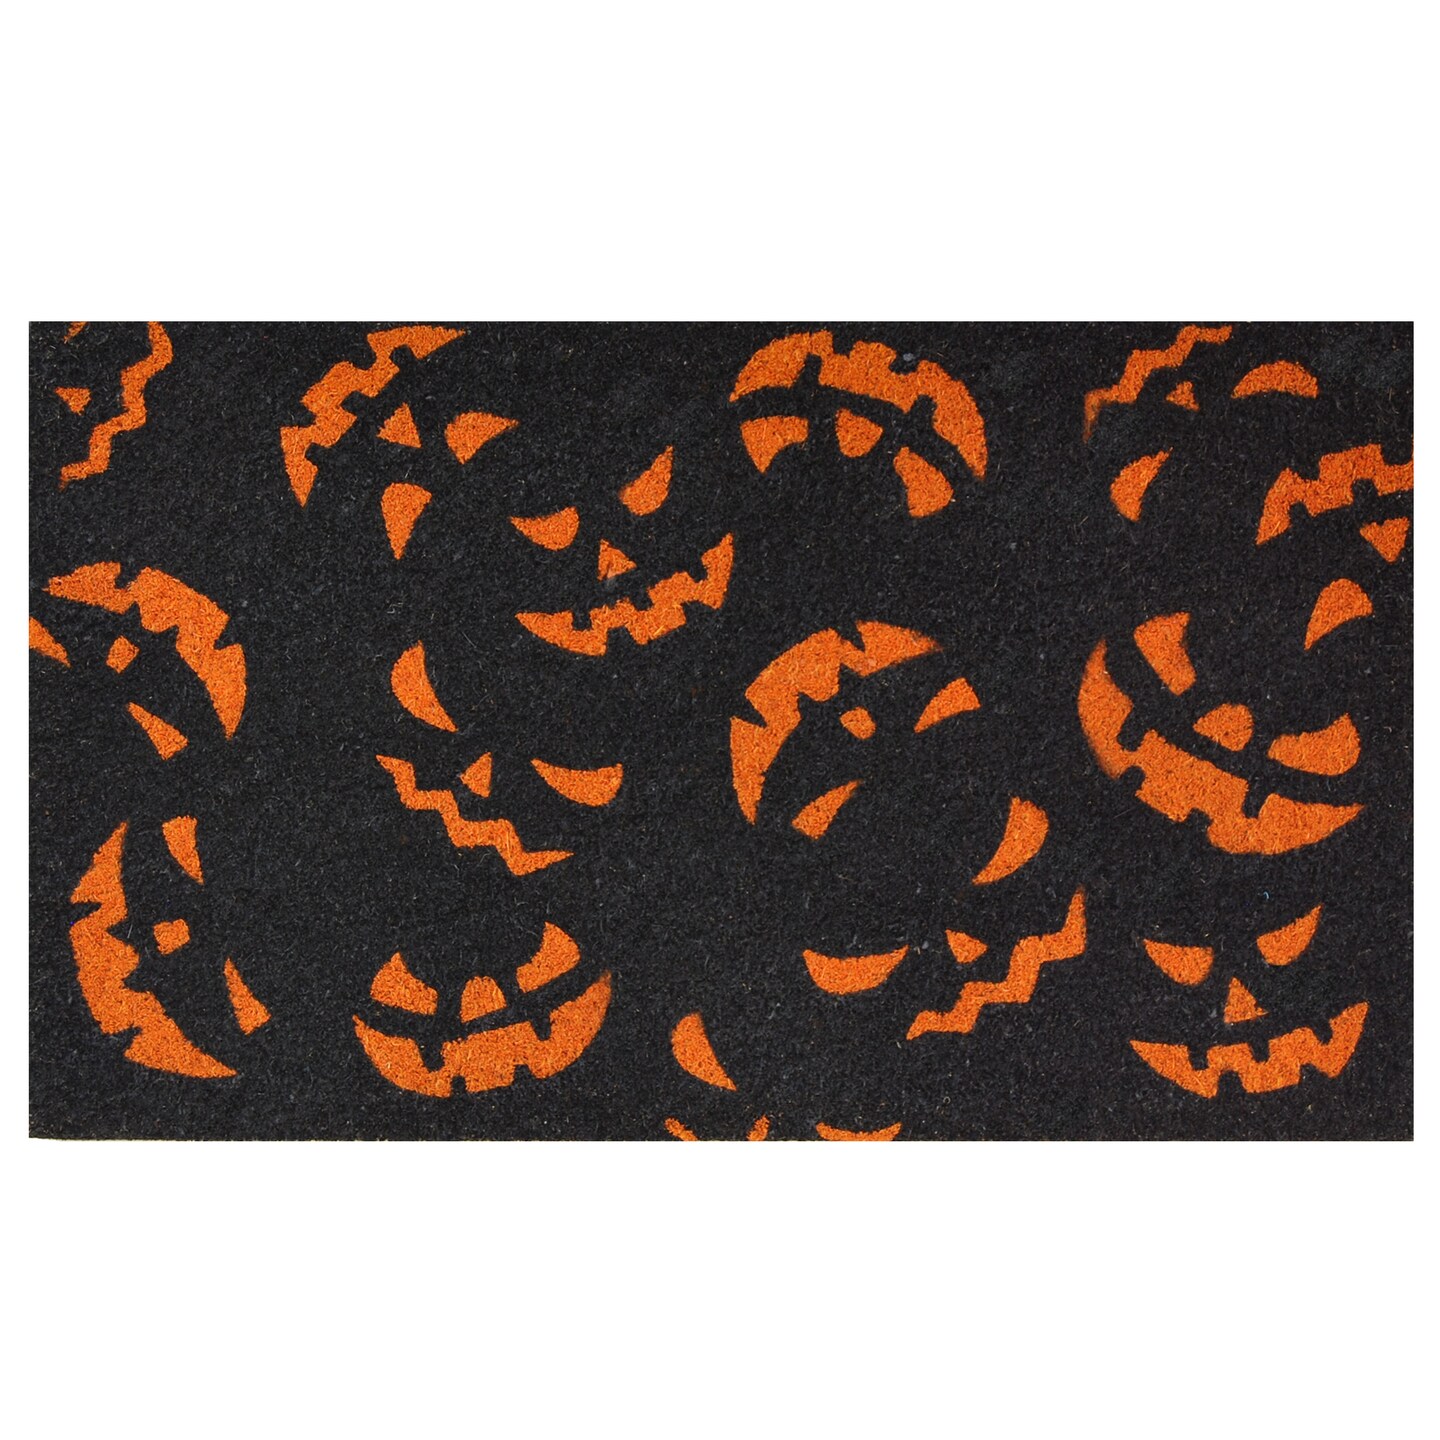 Scary Pumpkins Doormat